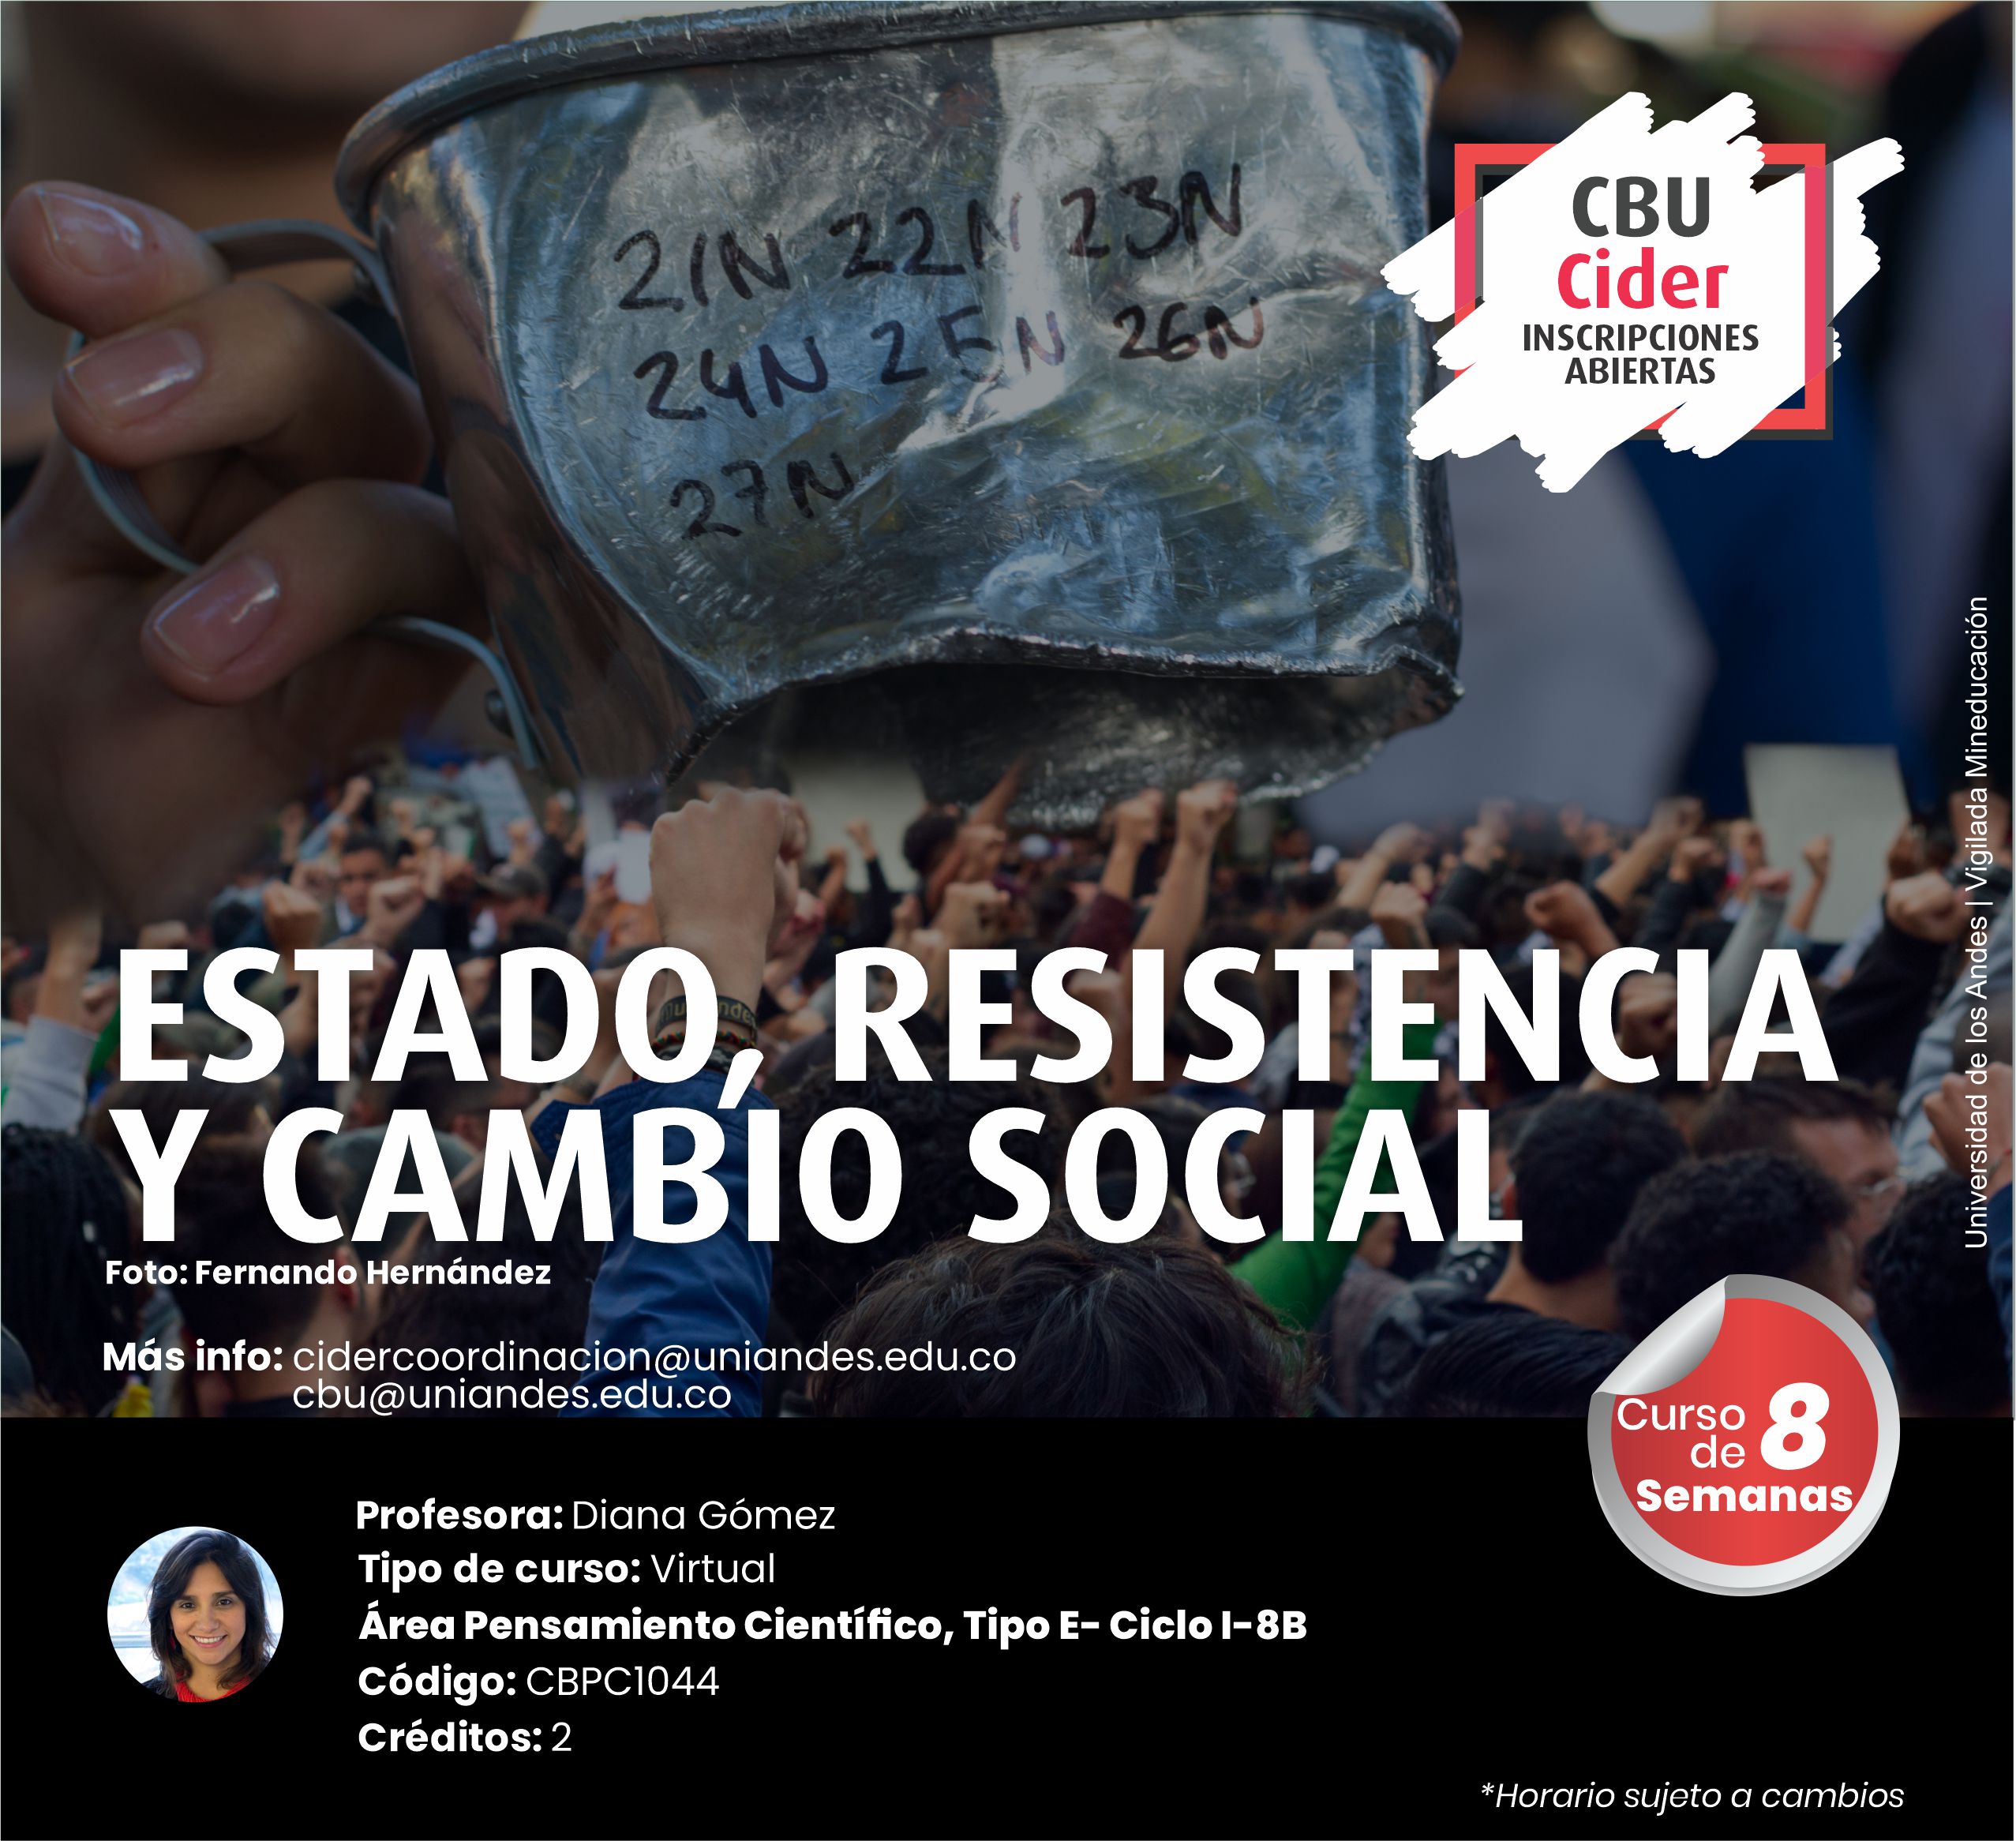 CBU: Estado, resistencia y cambio social- Cider | Uniandes